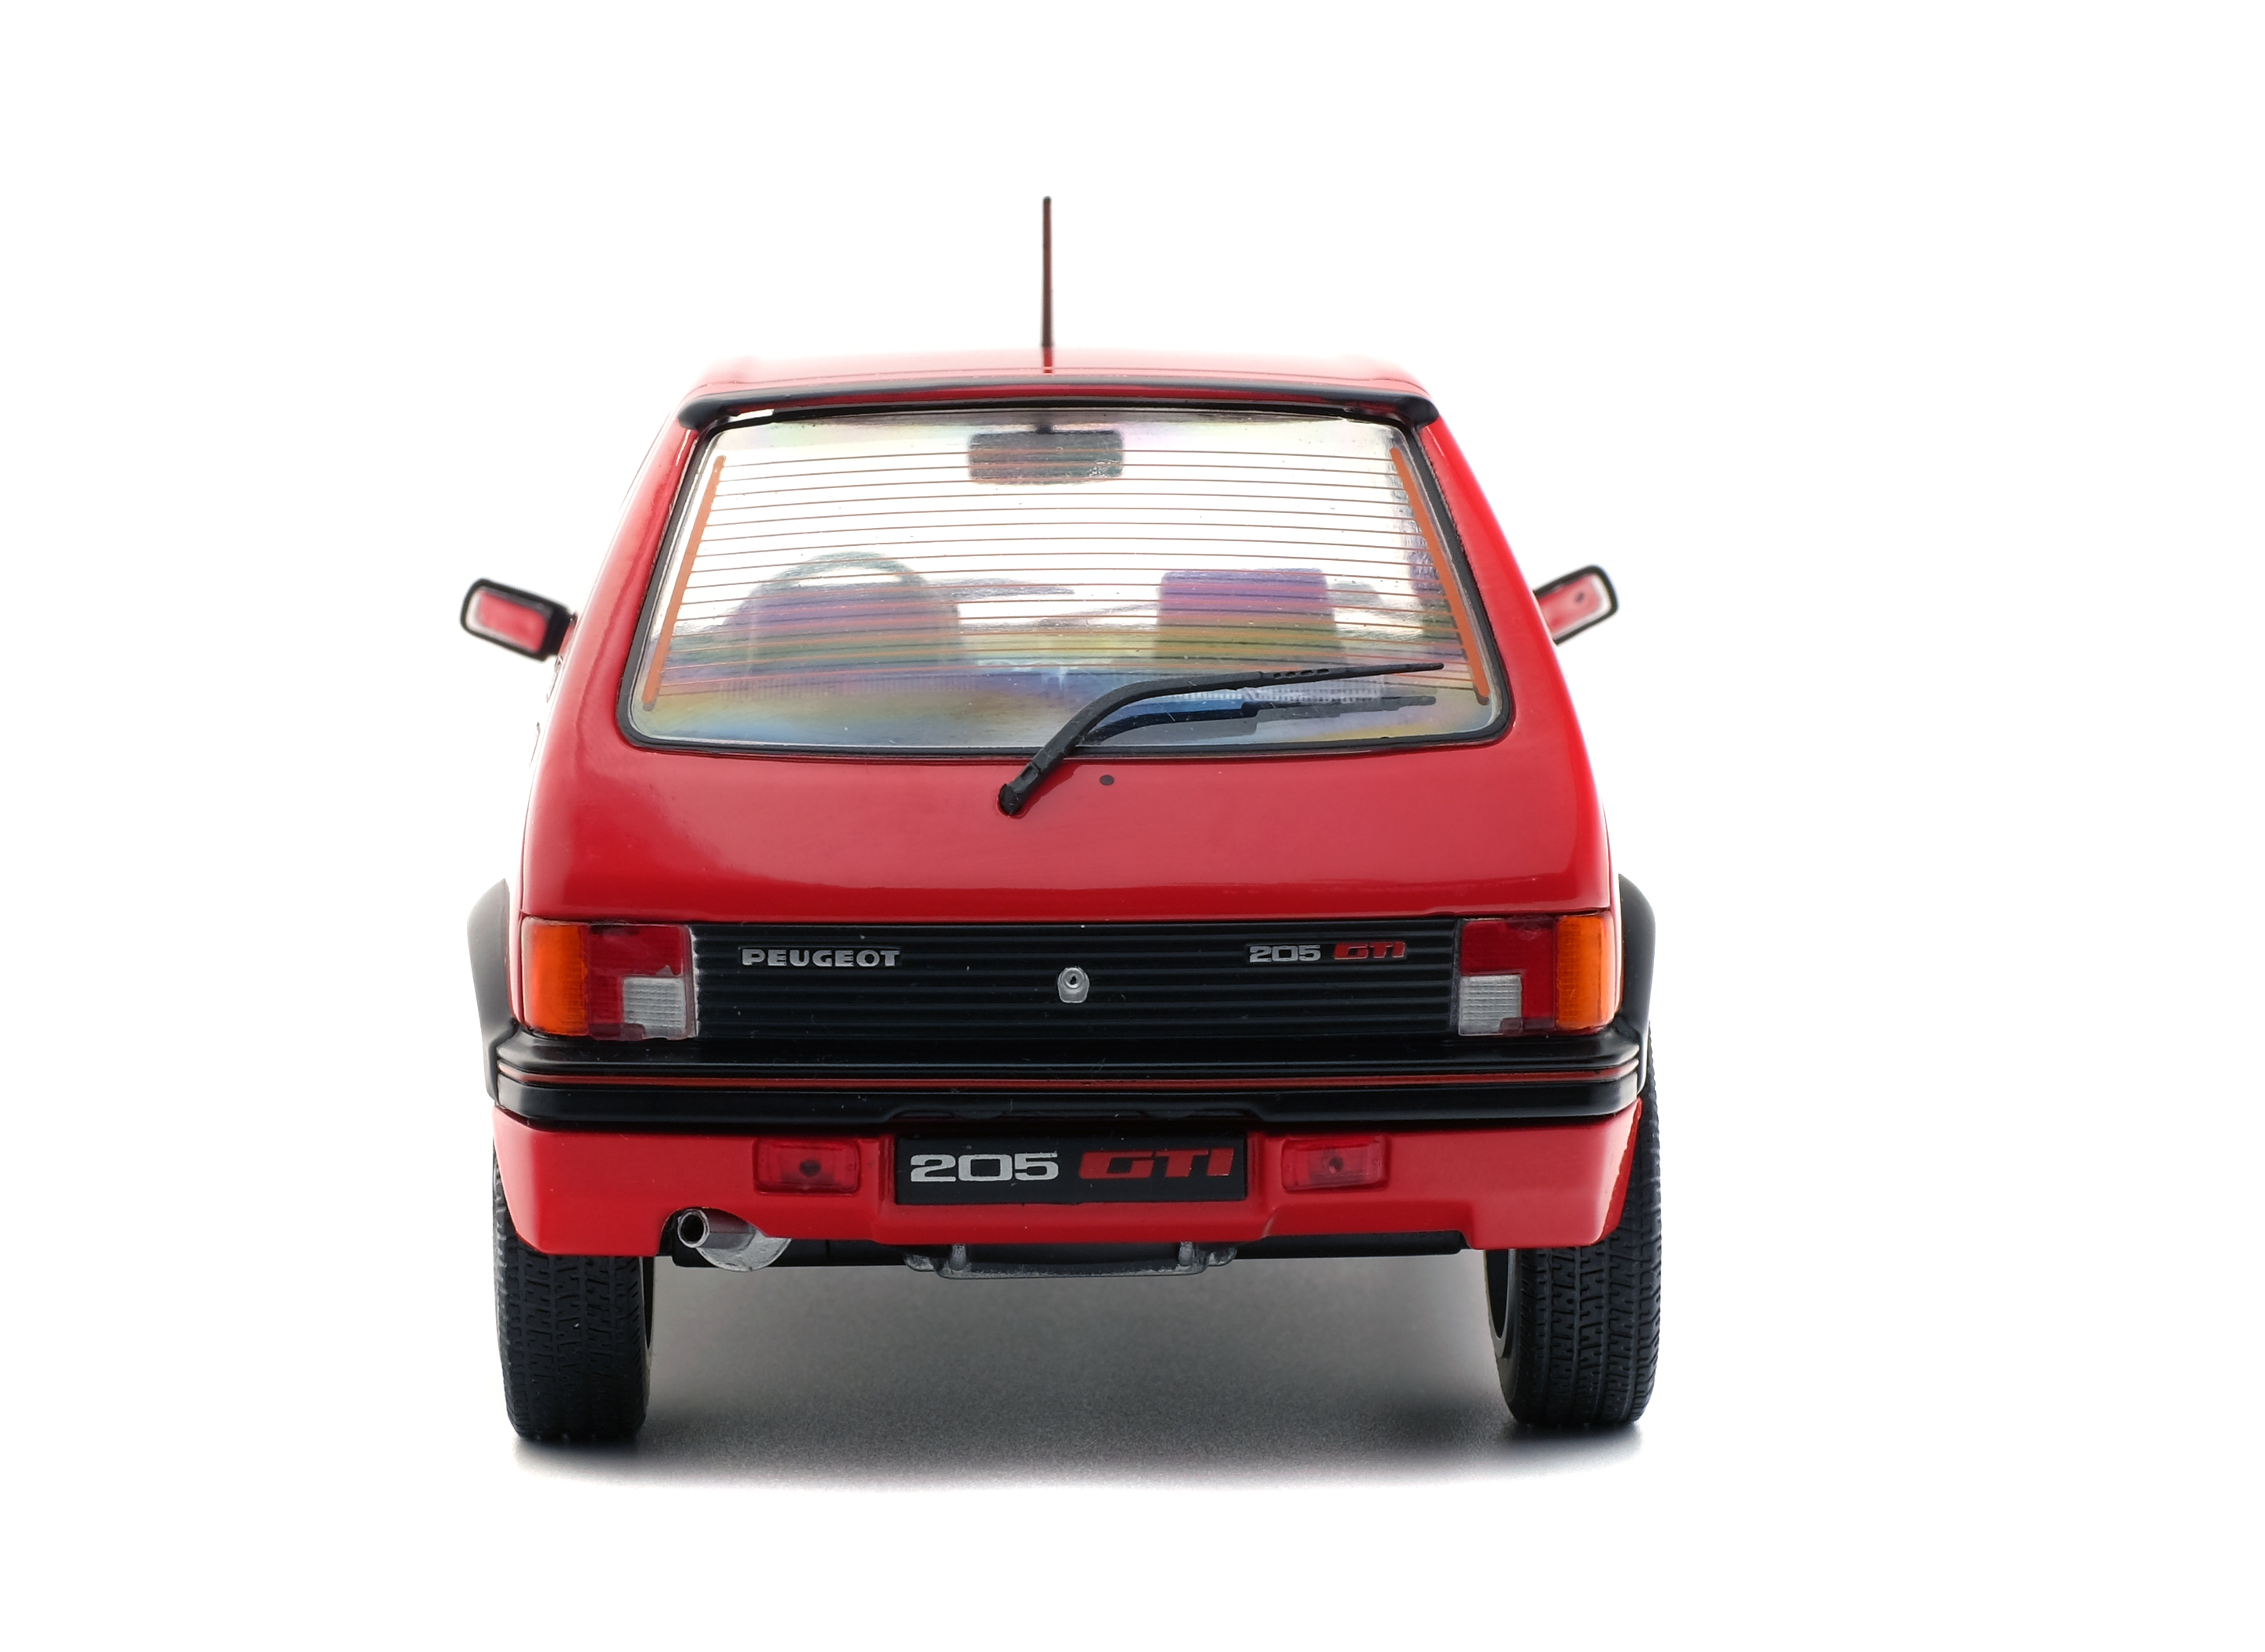 Peugeot 205 GTL Rot 1983-1998 1/18 Solido Modell Auto mit individiuellem Wunschkennzeichen